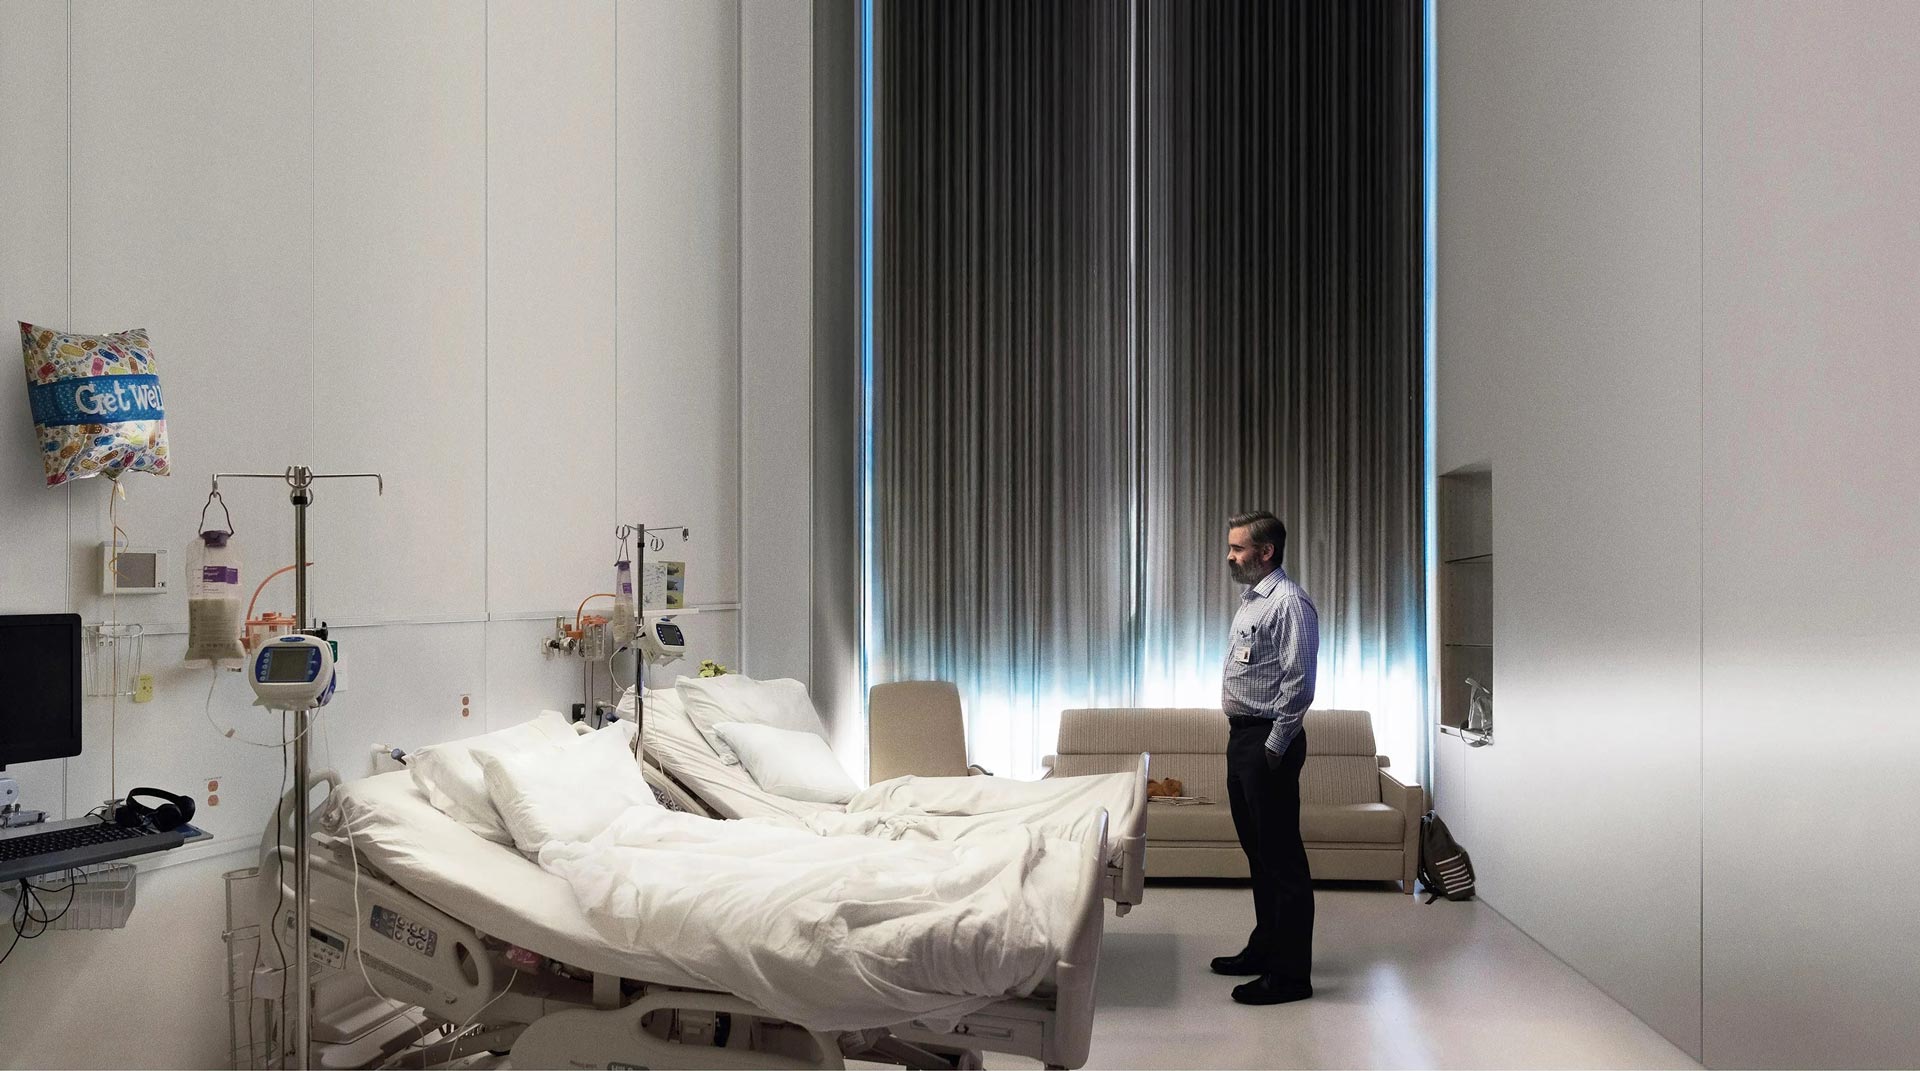 تصویری از کالین فارل در فیلم کشتن گوزن مقدس در اتاق خالی بیمارستان